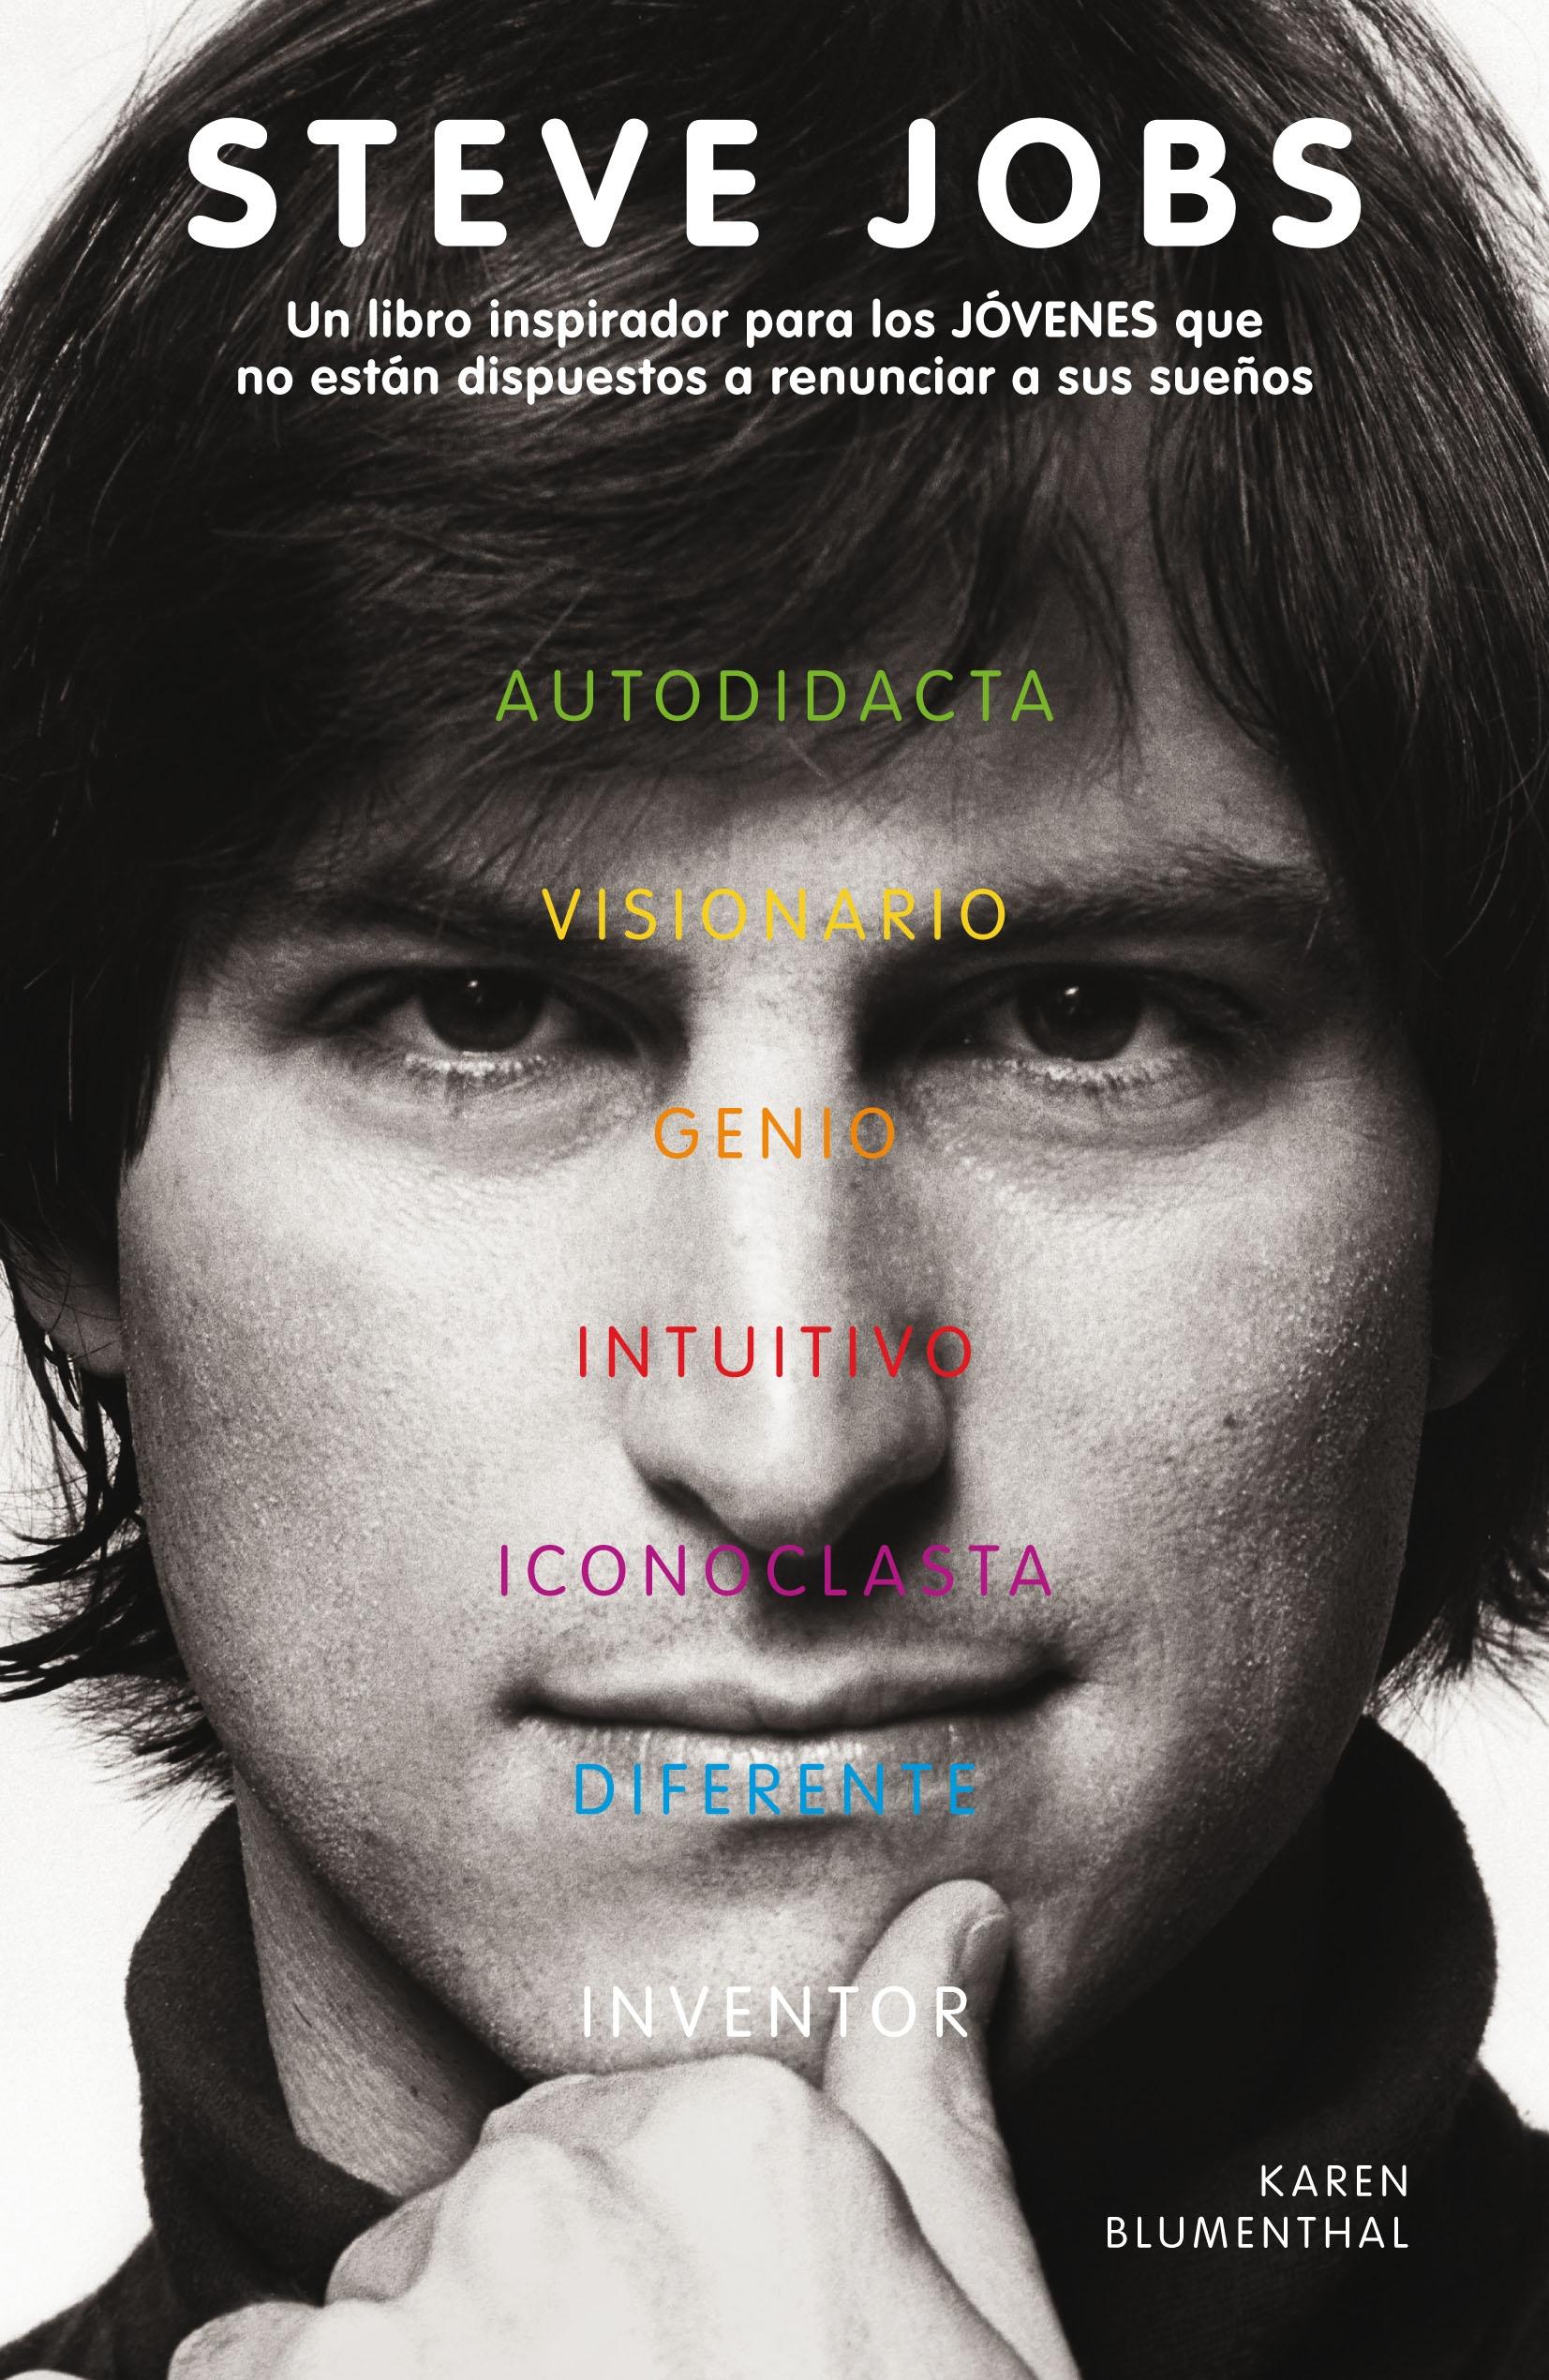 Steve Jobs "Un libro inspirador para los jóvenes que no están dispuestos a renunciar a sus sueños"